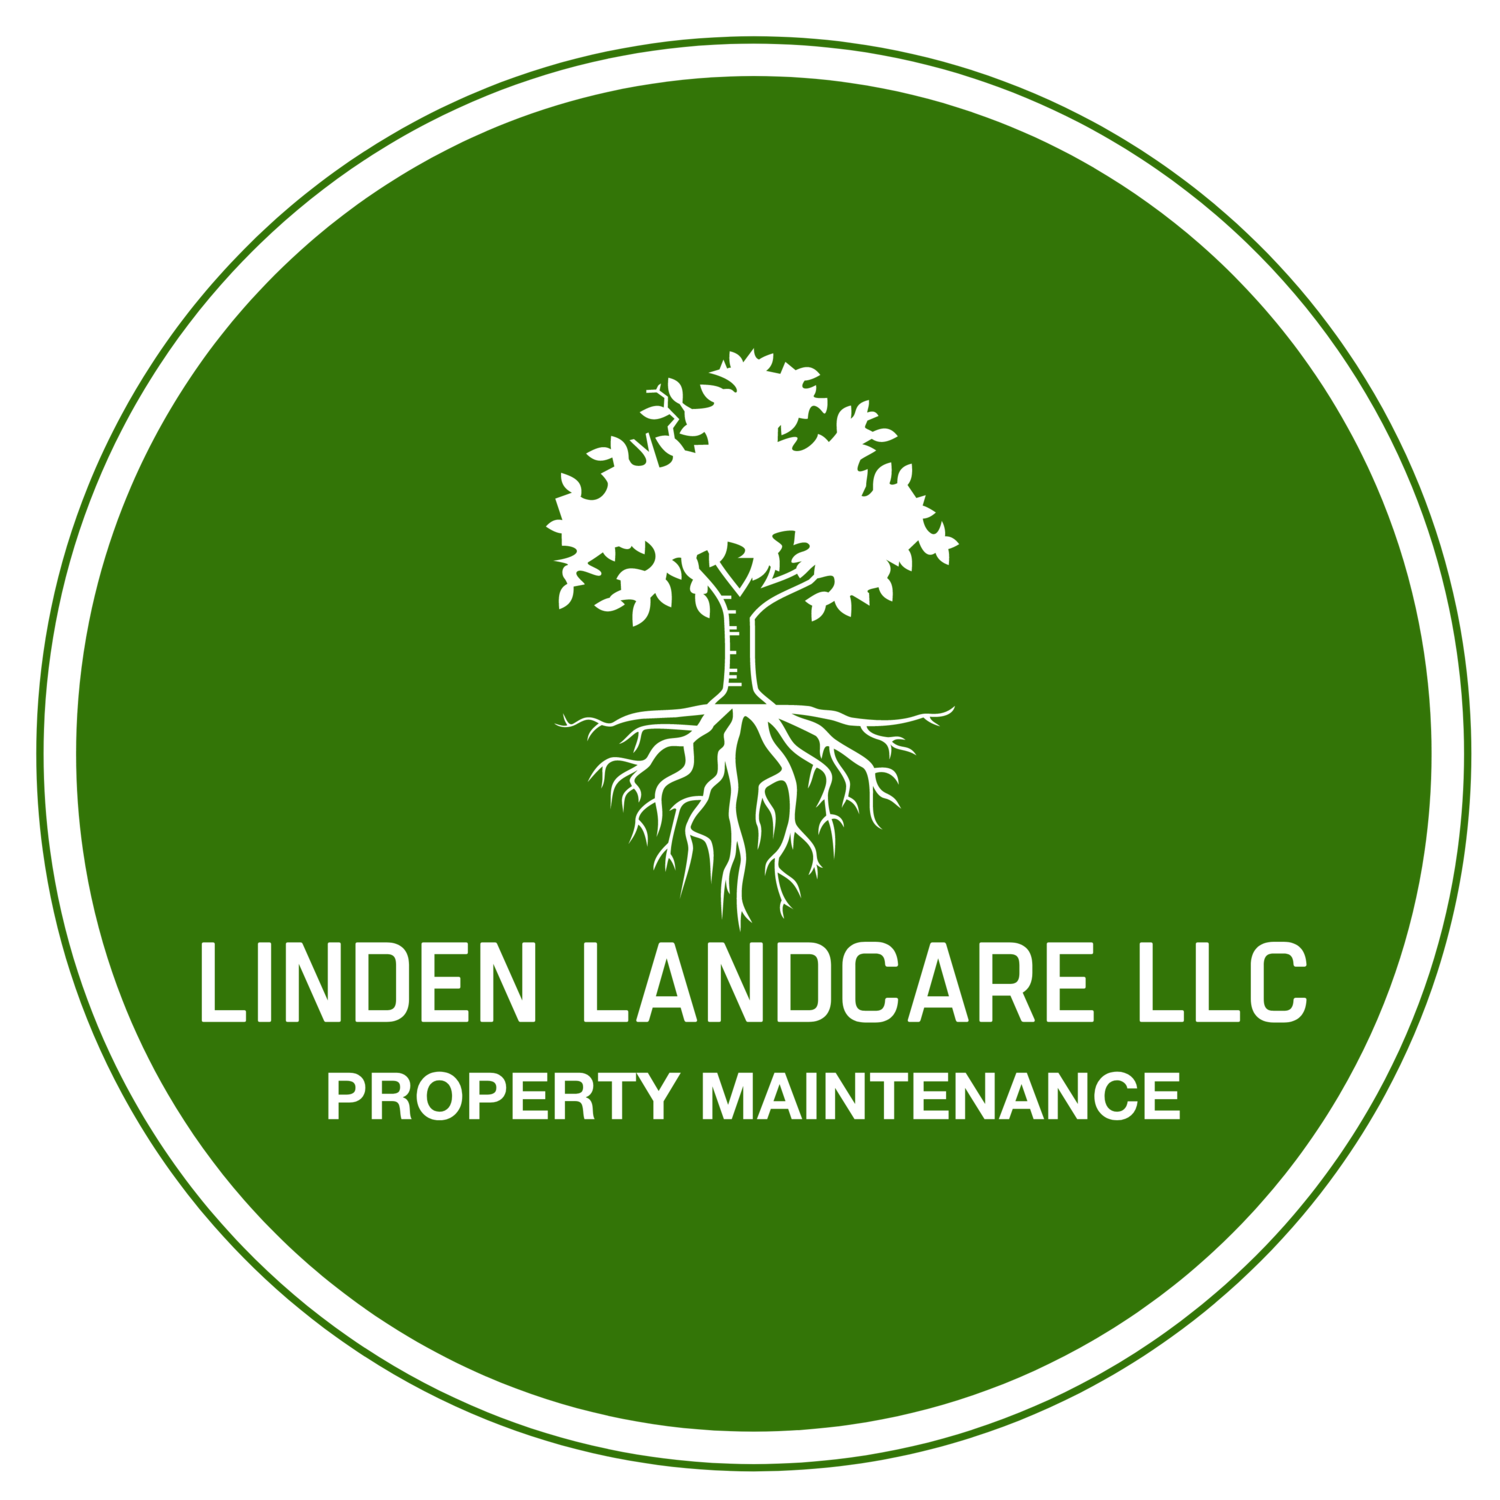 Linden Landcare LLC